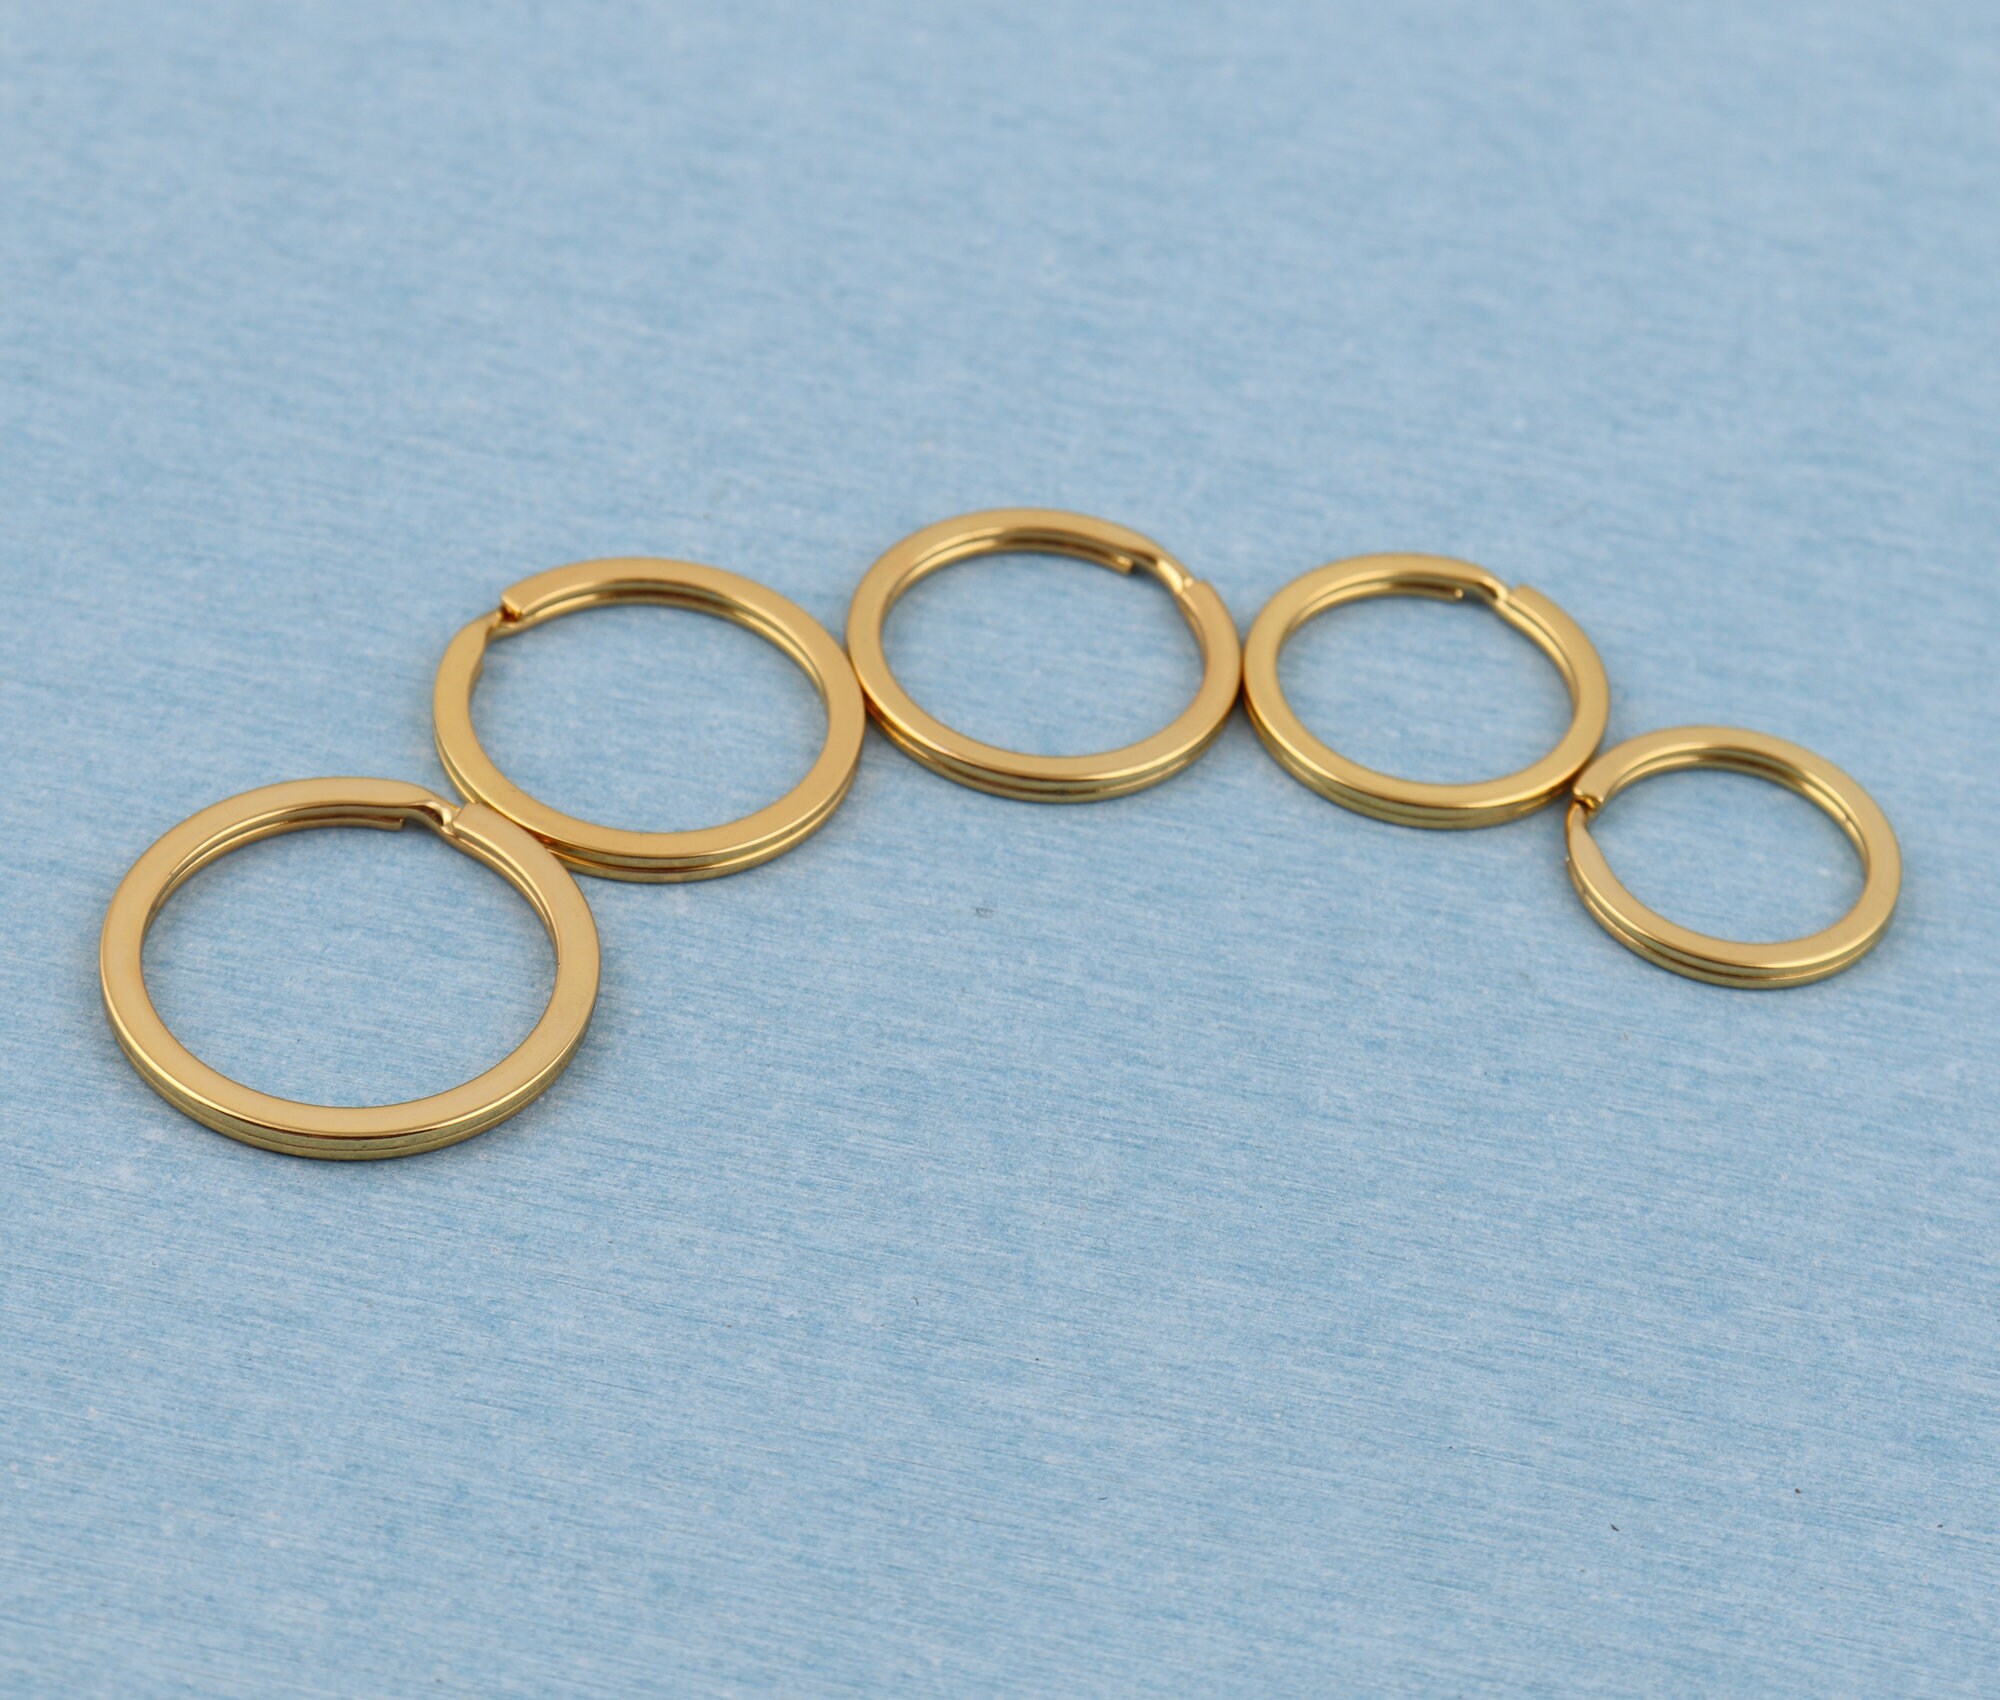 Bulk Keychain Key Ring Findings Flat Split Ring Keyring 30mm Gold